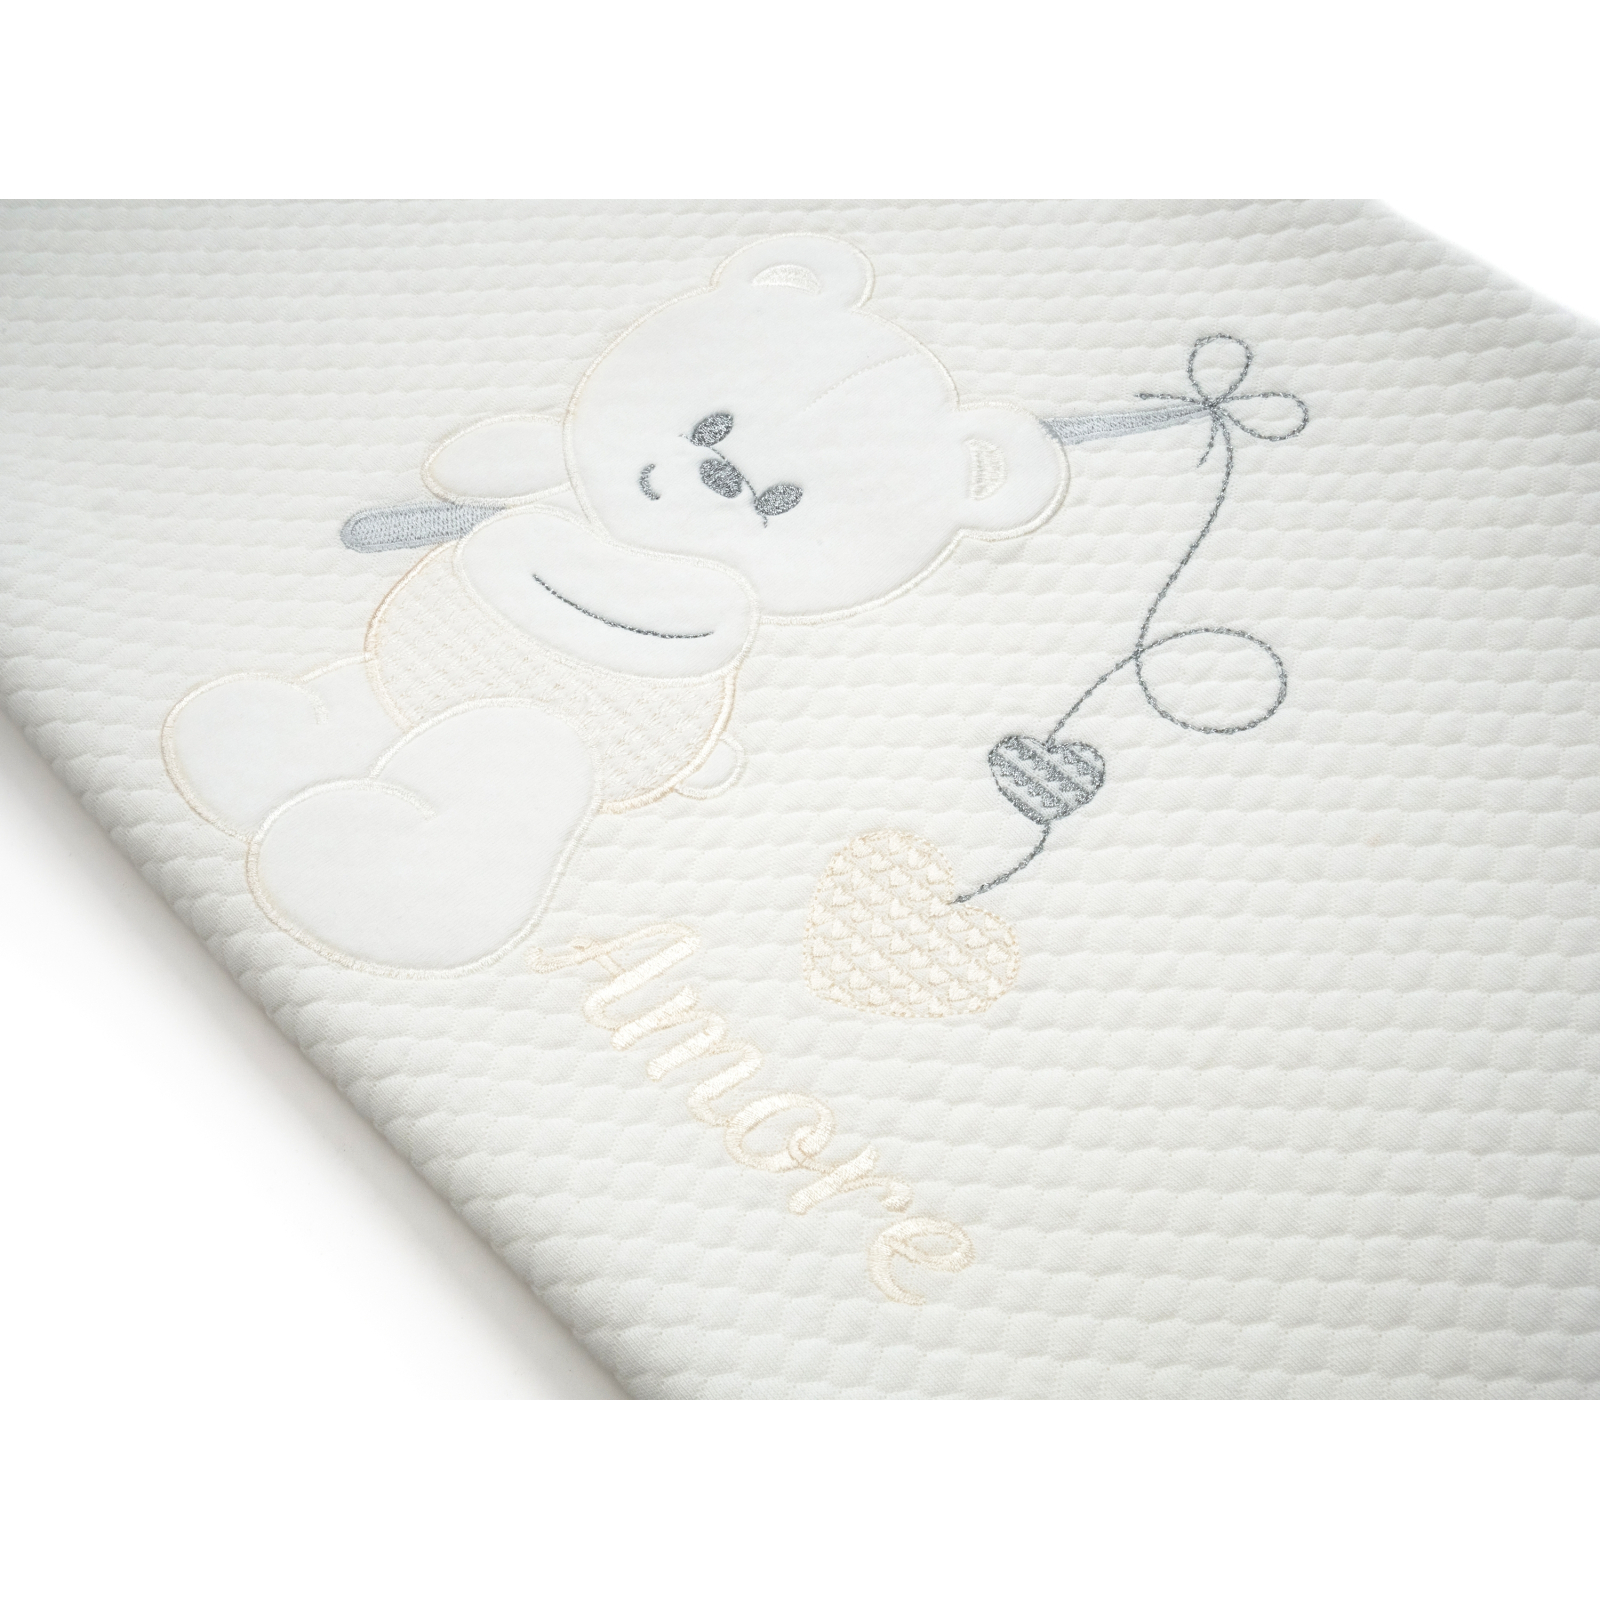 Детское одеяло Breeze с мишкой (64291-pink) изображение 3